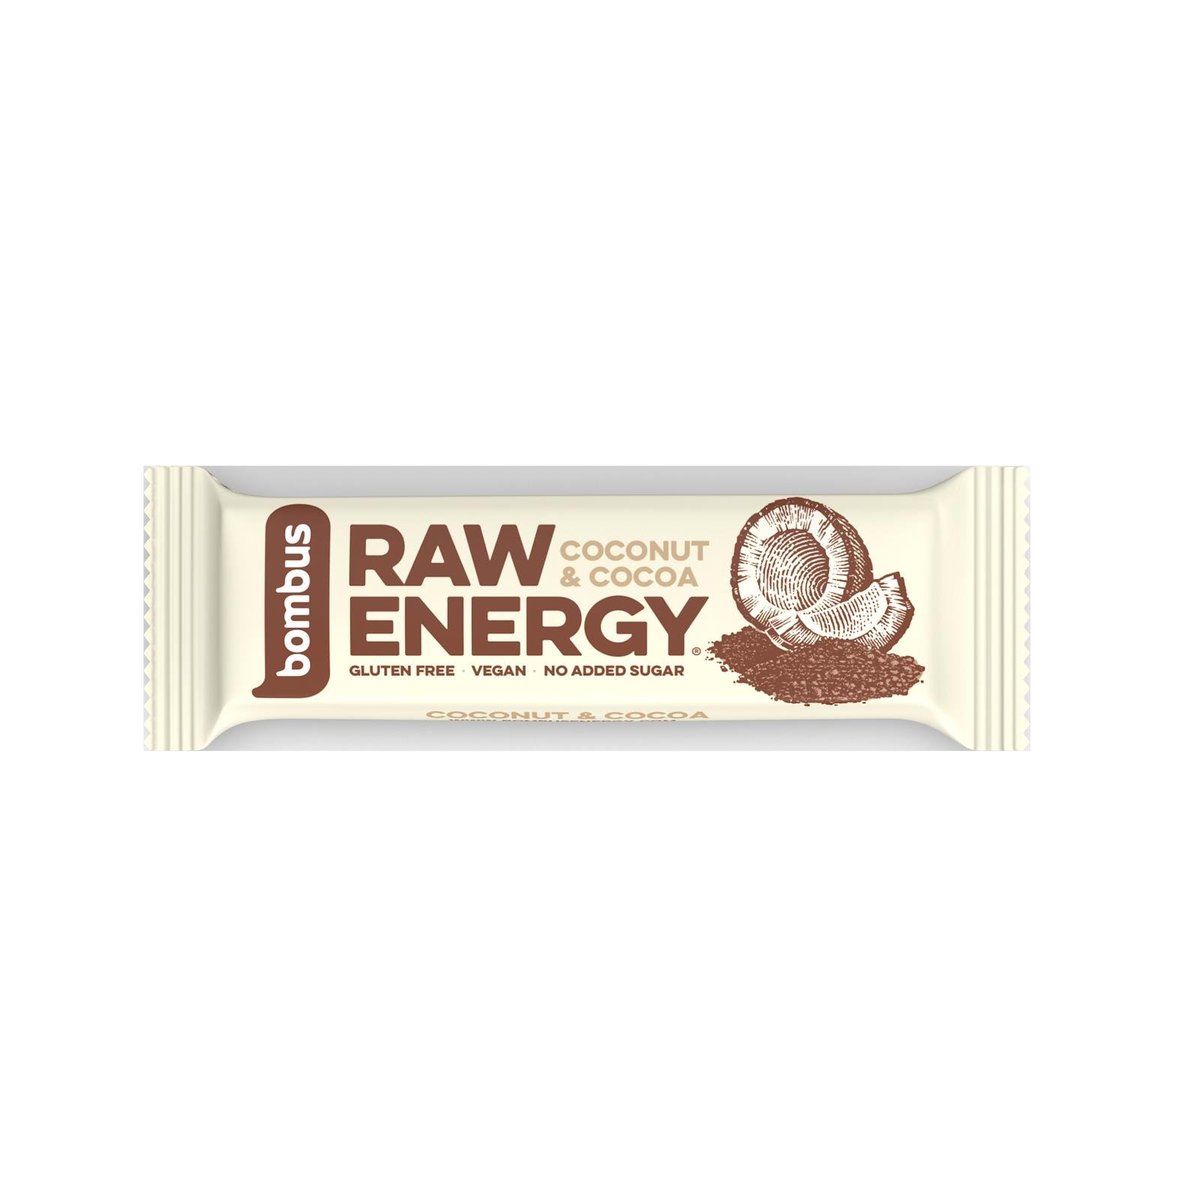 Bombus Raw energy cocoa & coconut tyčinka